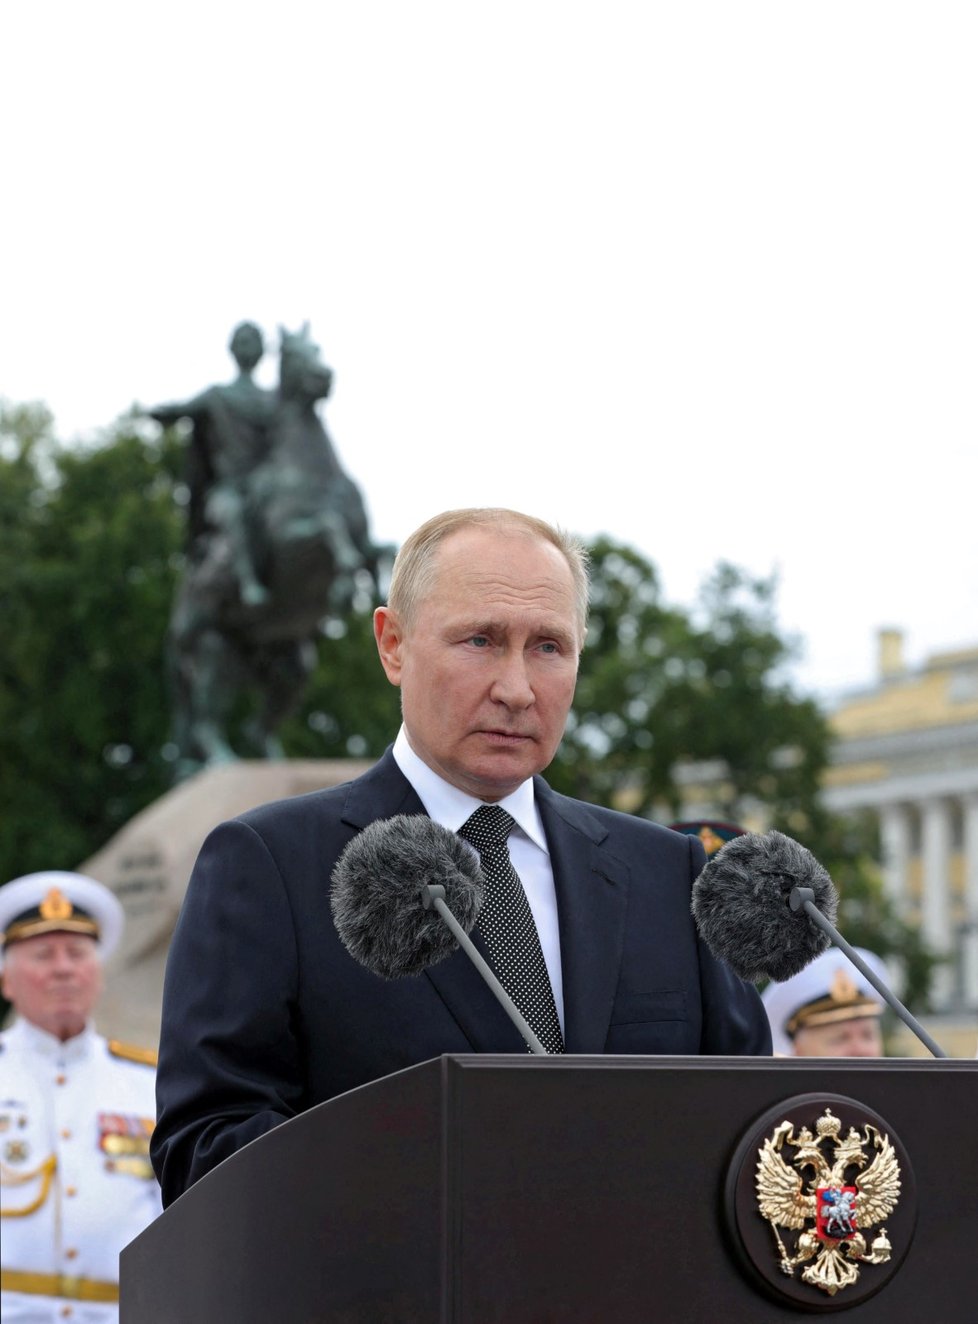 Prezident Putin ohlásil novou námořní doktrínu.